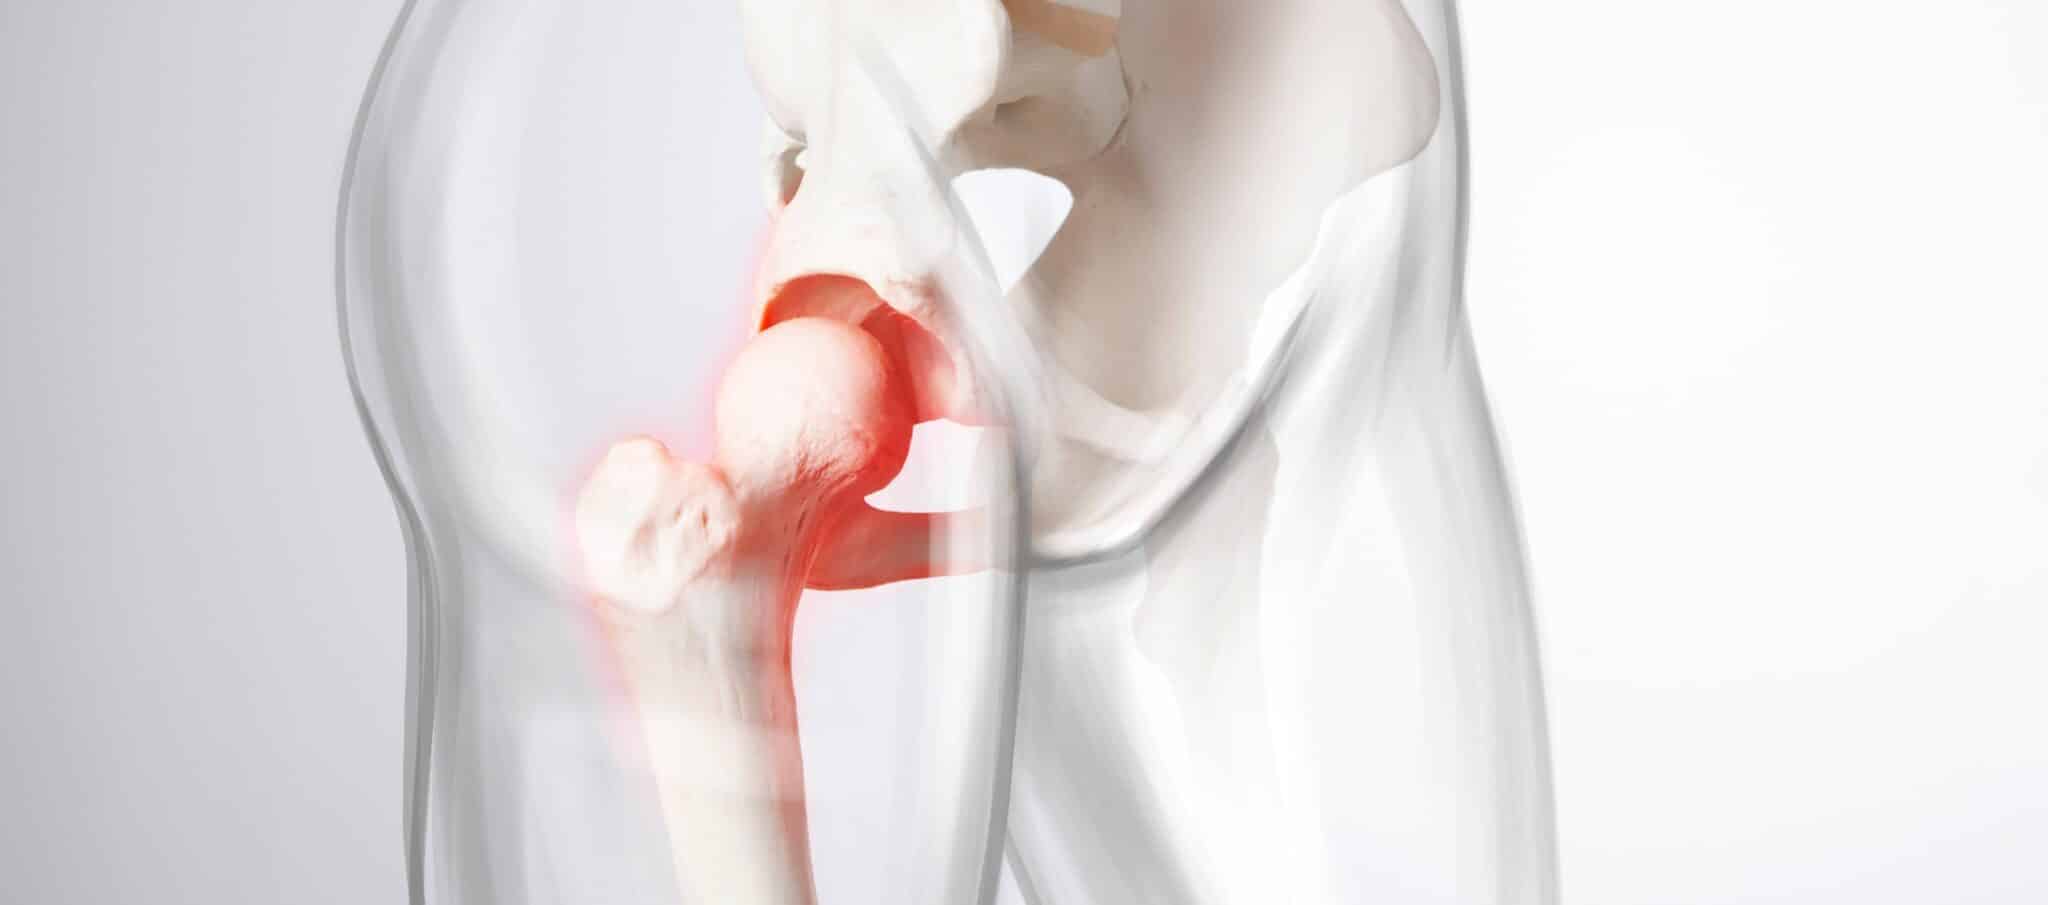 Comment prévenir une nécrose de la hanche ? | Dr Paillard | Paris